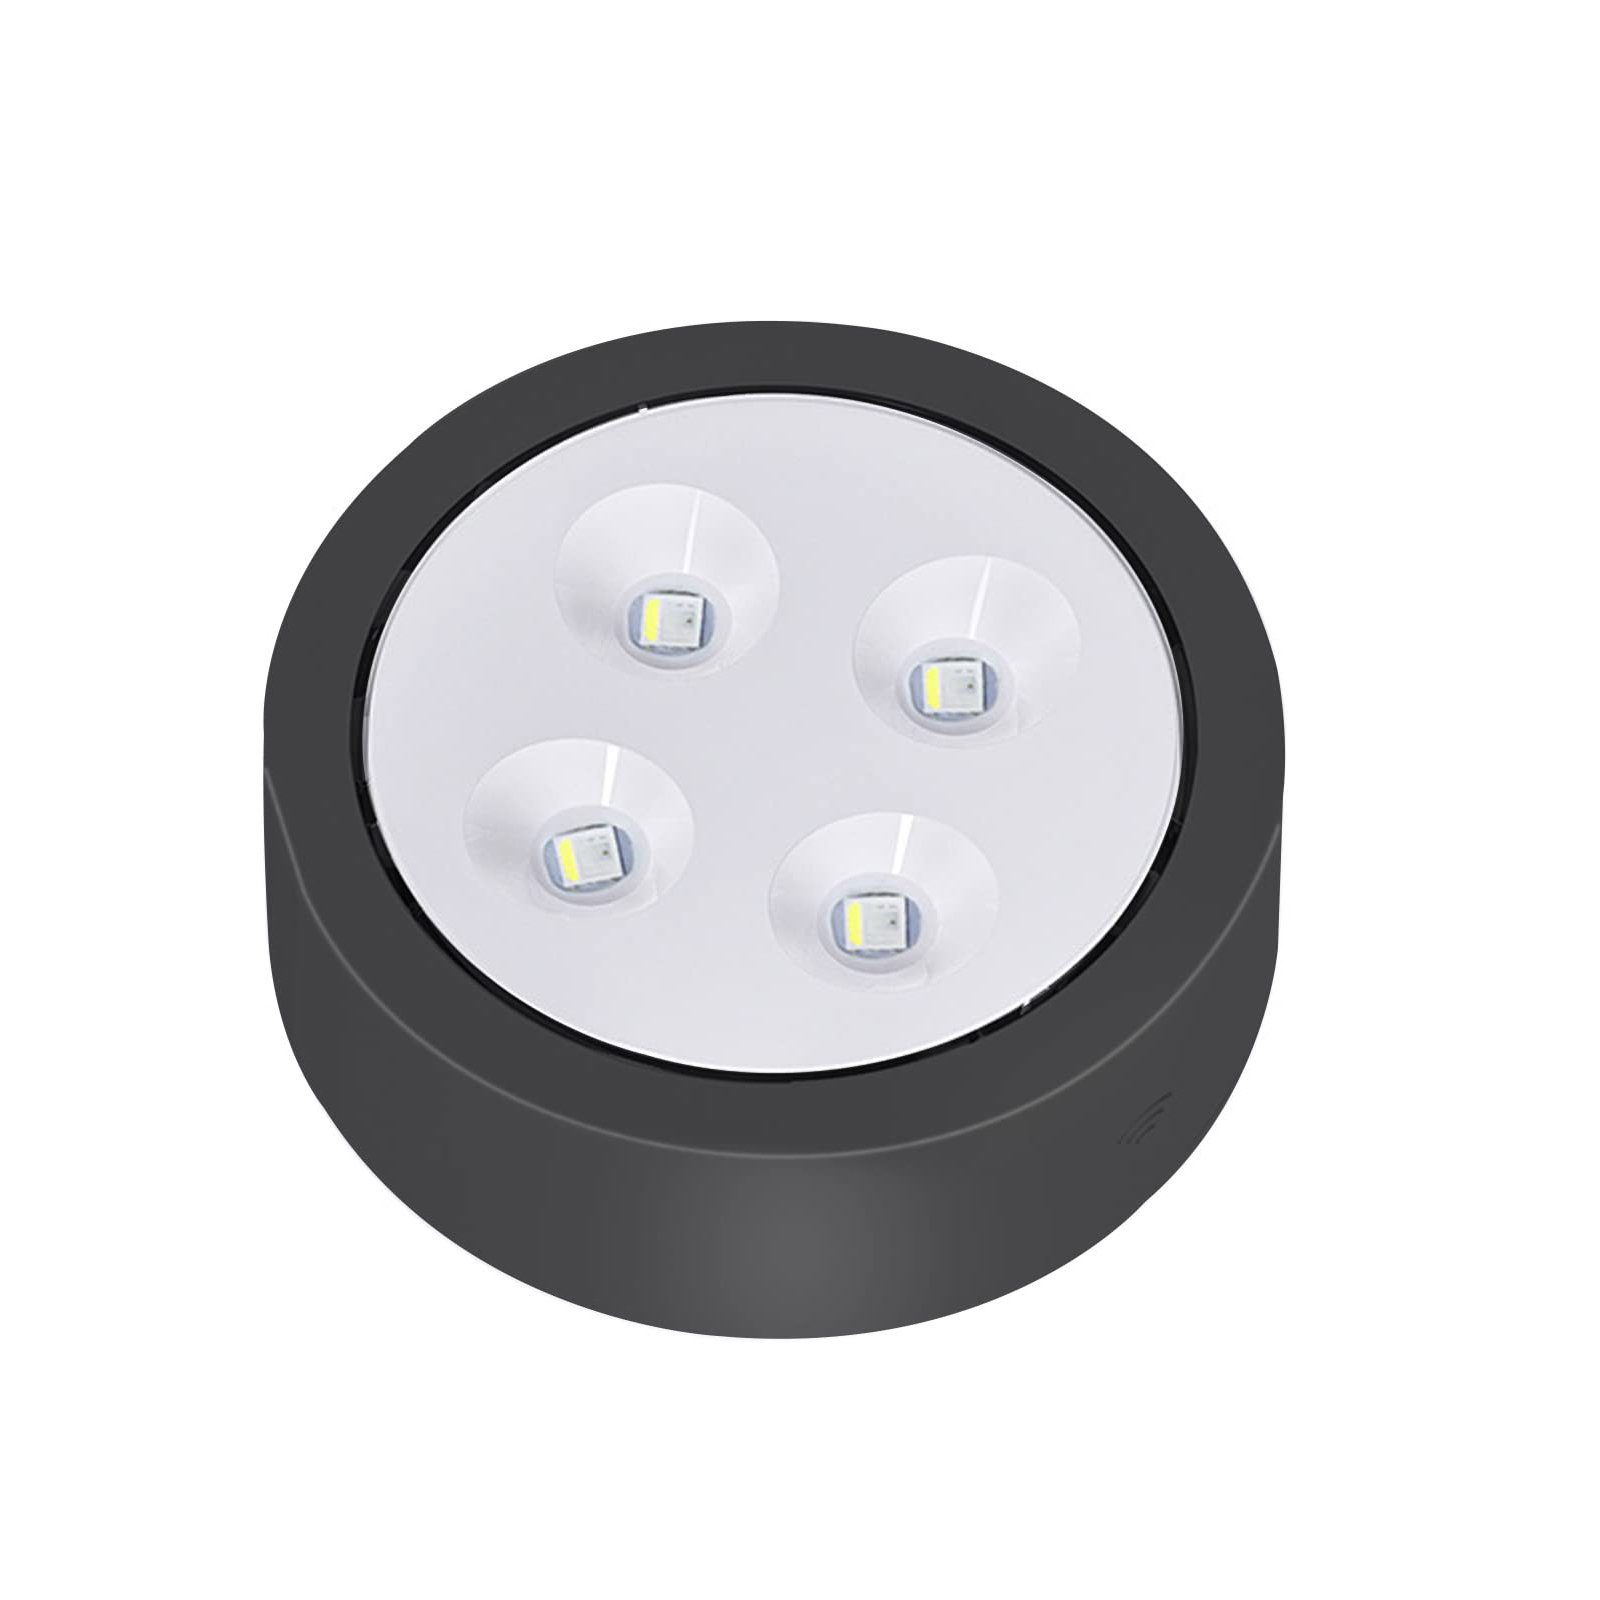 13 Batterielampe, Schwarz RGB Farben, Dimmbar Küche Nachtlicht Sunicol Spot, mit Fernsteuerung, LED Glasboden Touch Unterbauleuchte Schrank Sensor Vitrinenbeleuchtung